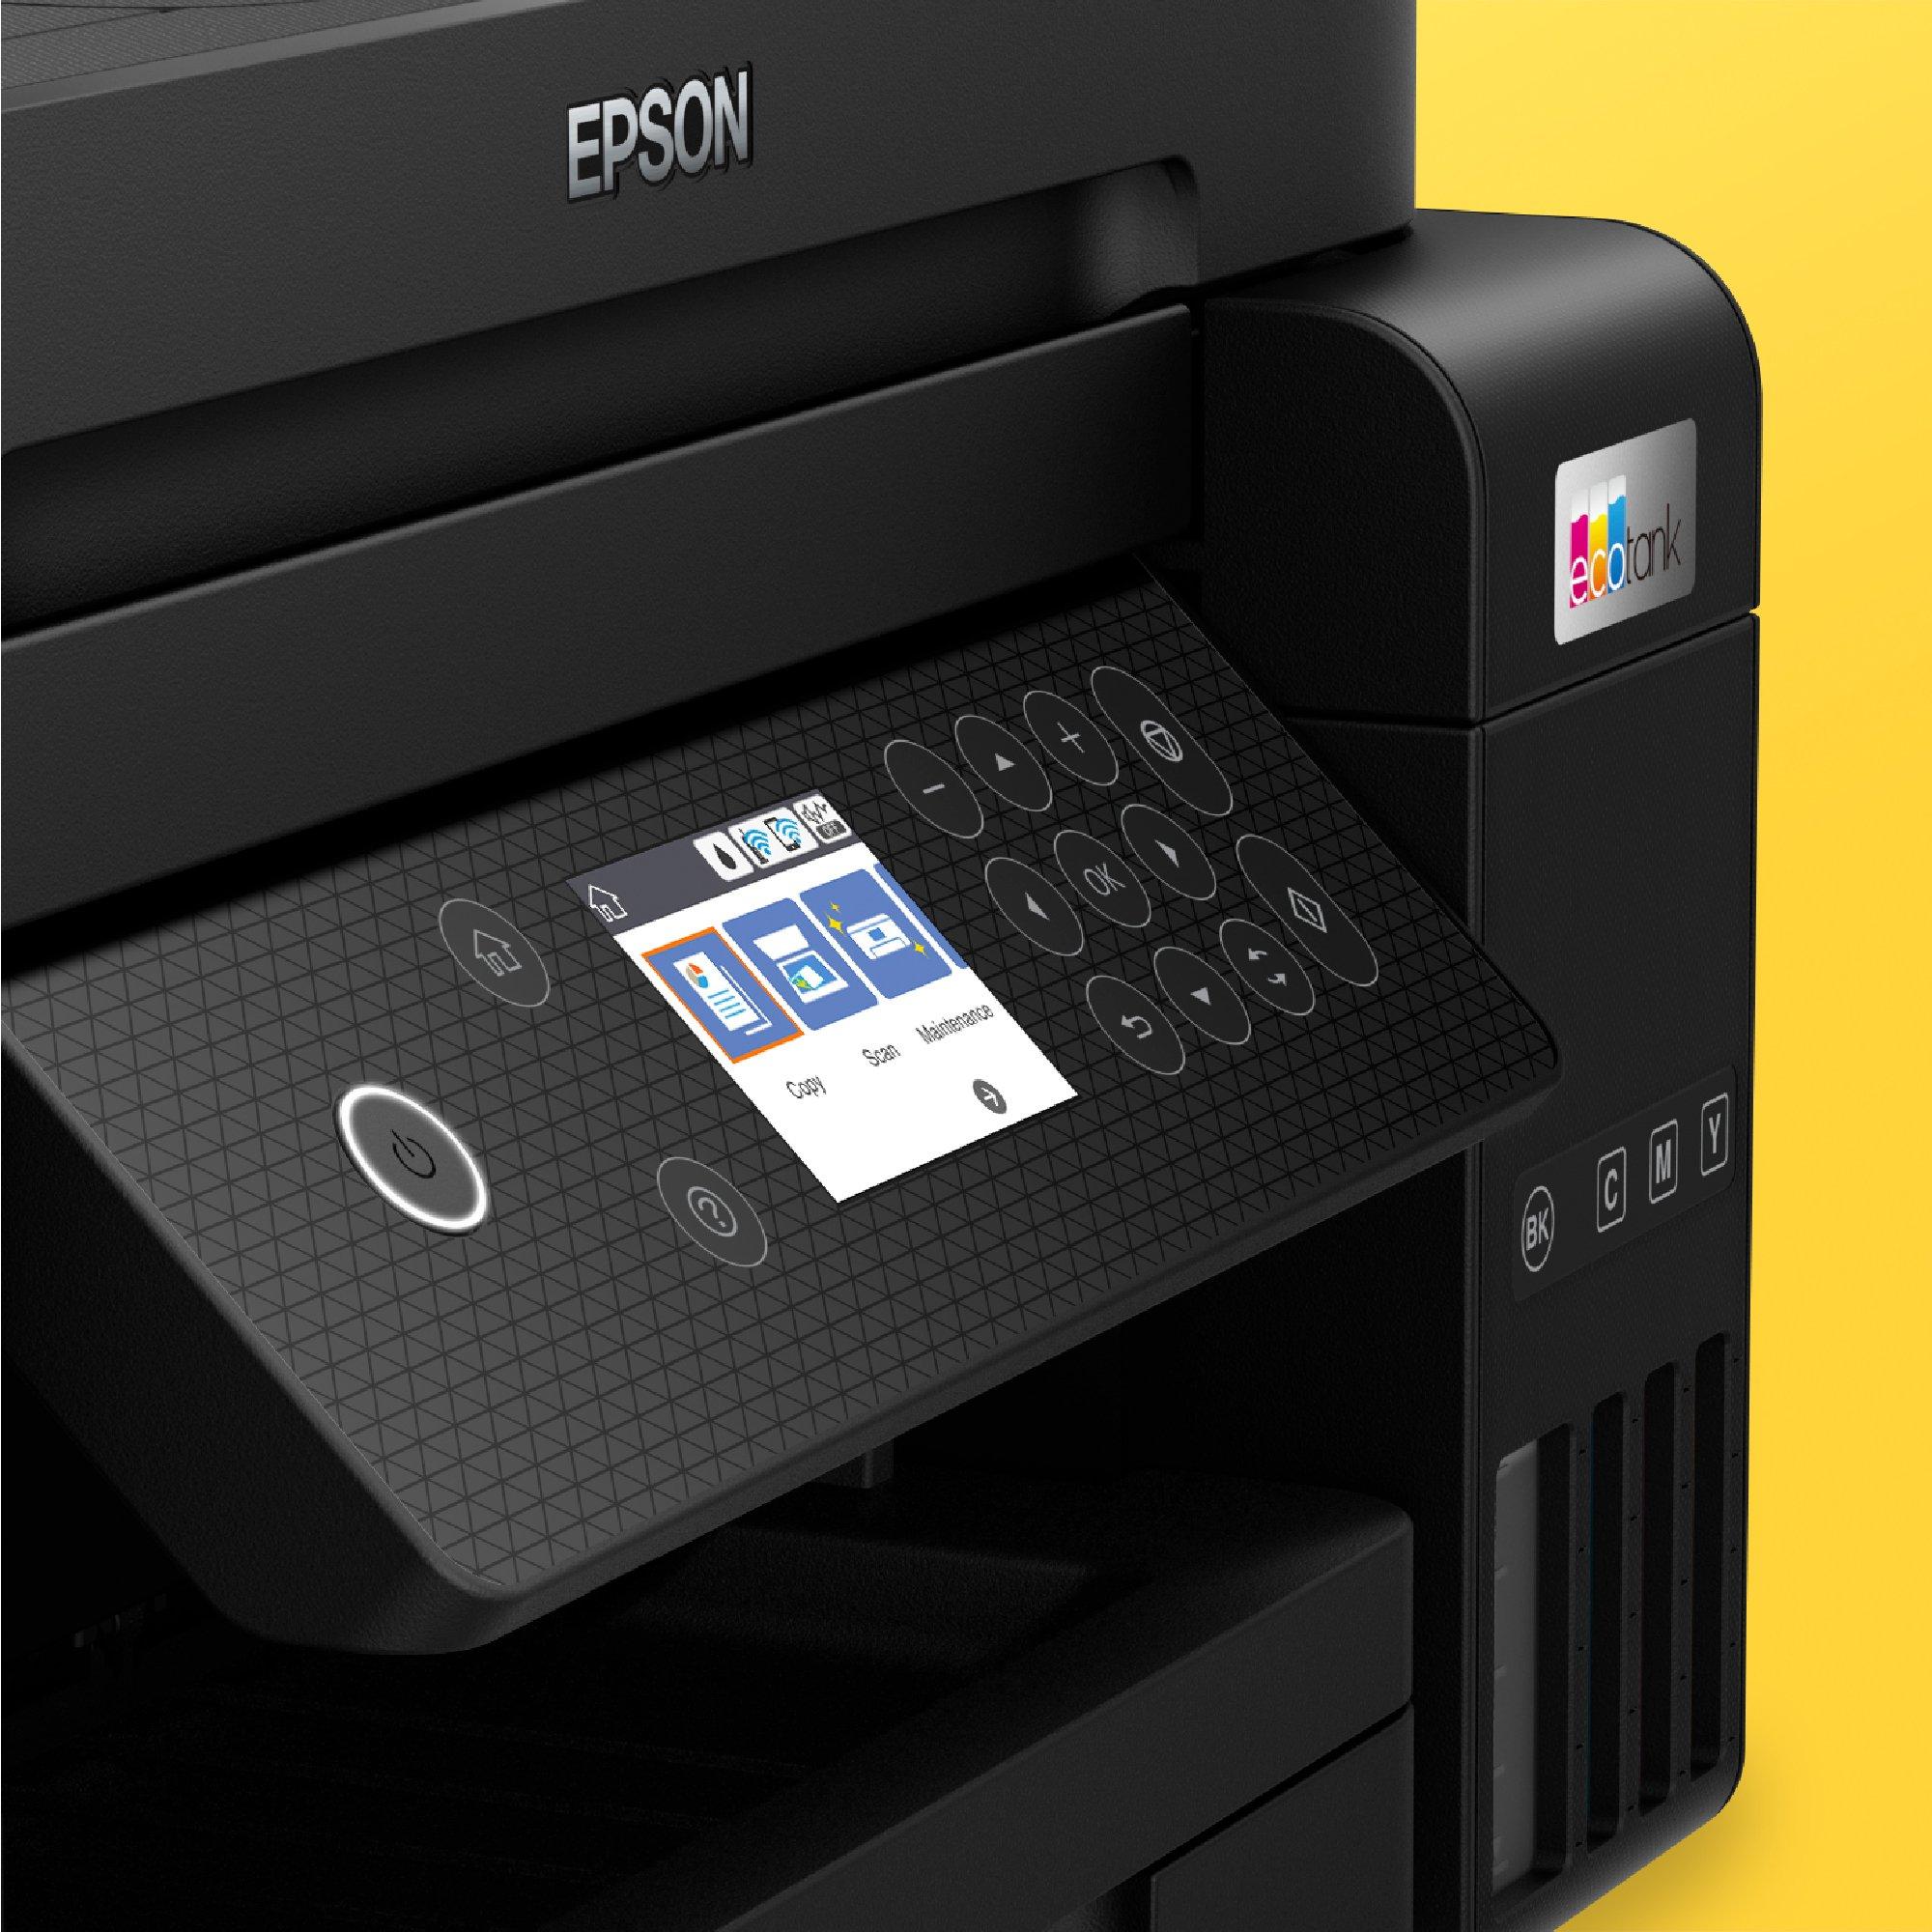 Impresora multifunción  Epson EcoTank ET-3850, Con depósito recargable,  Hasta 3 años de tinta incluida, Conexión Wi-Fi, 5 años garantía, Negro